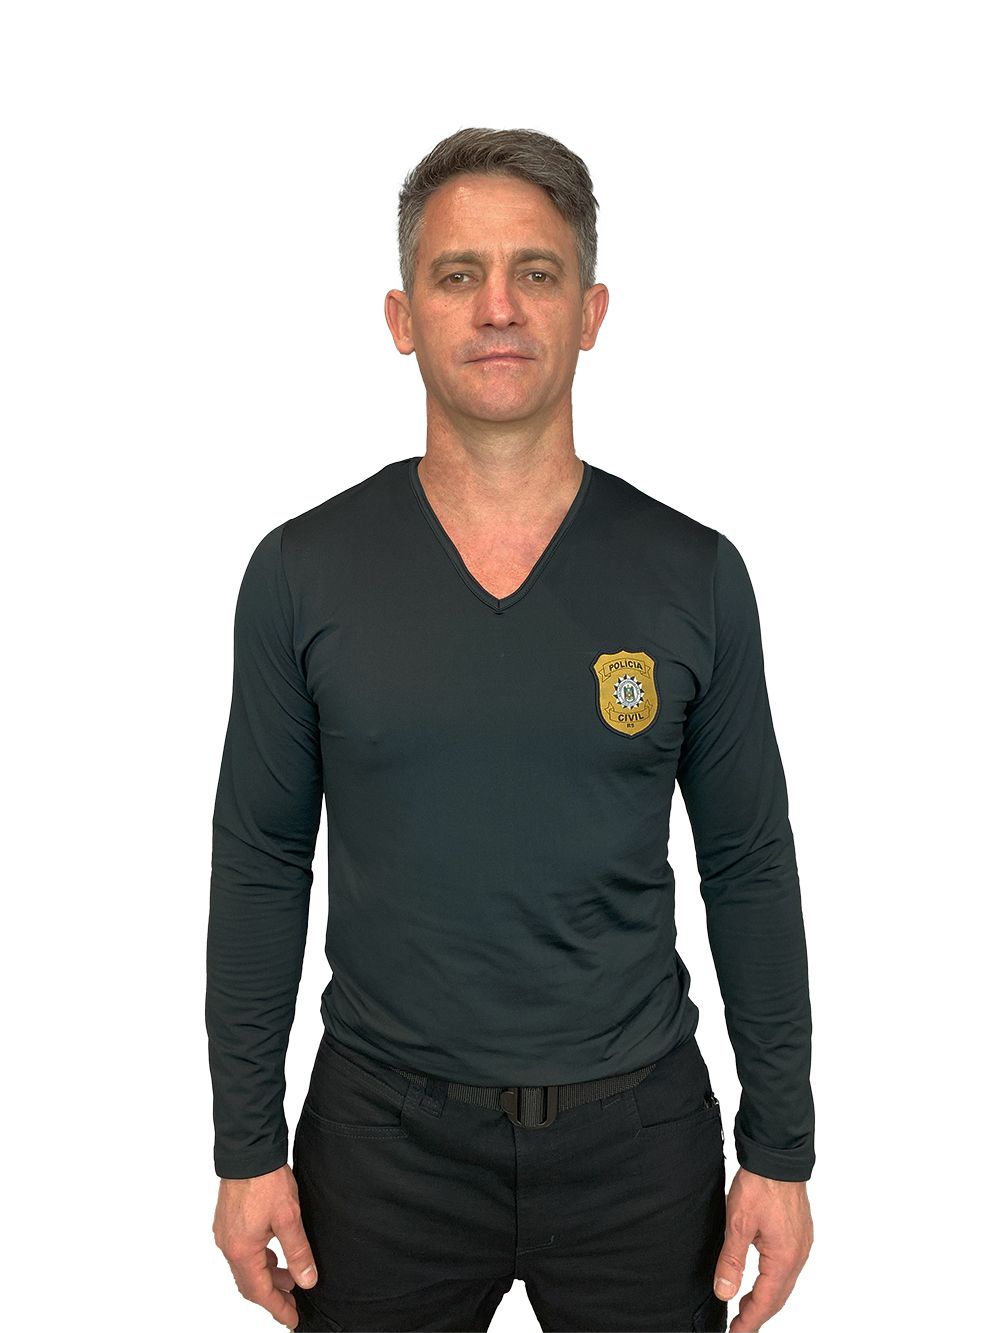 Camiseta Térmica Manga Longa Policia Civil - Artigos Militares, Fardas,  Uniformes Militares, Fardas Militares